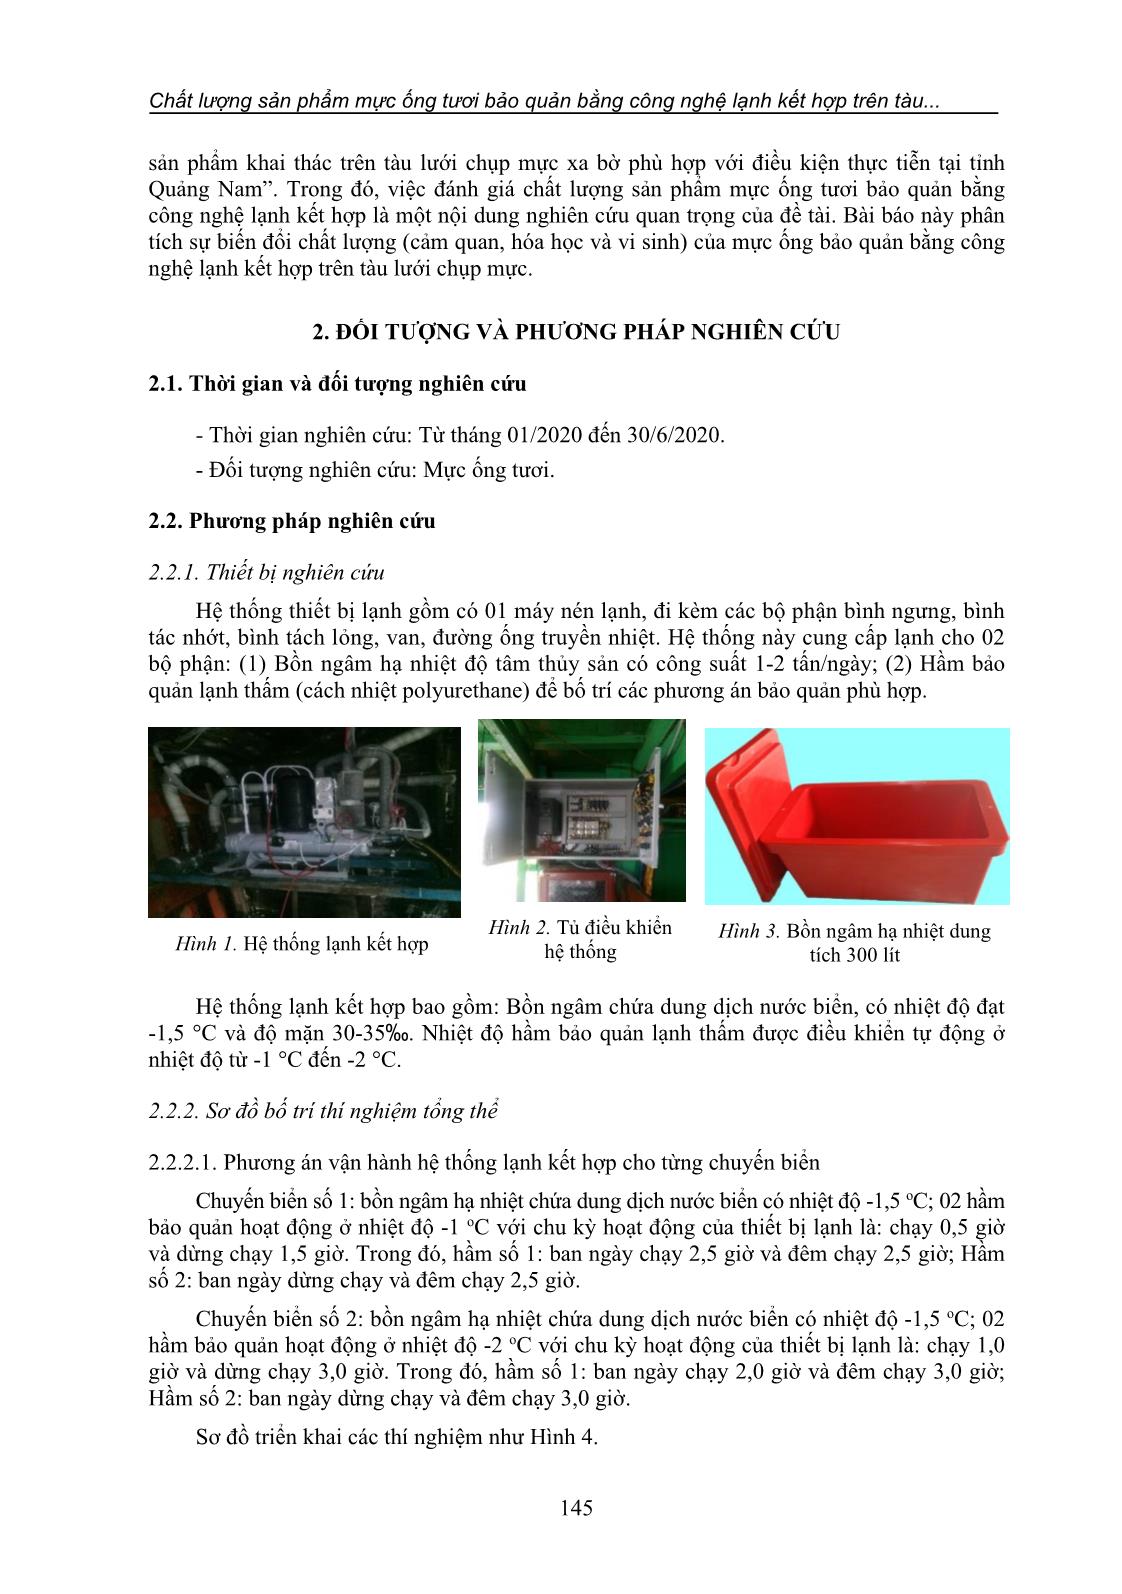 Chất lượng sản phẩm mực ống tươi bảo quản bằng công nghệ lạnh kết hợp trên tàu lưới chụp mực xa bờ tỉnh Quảng Nam trang 2